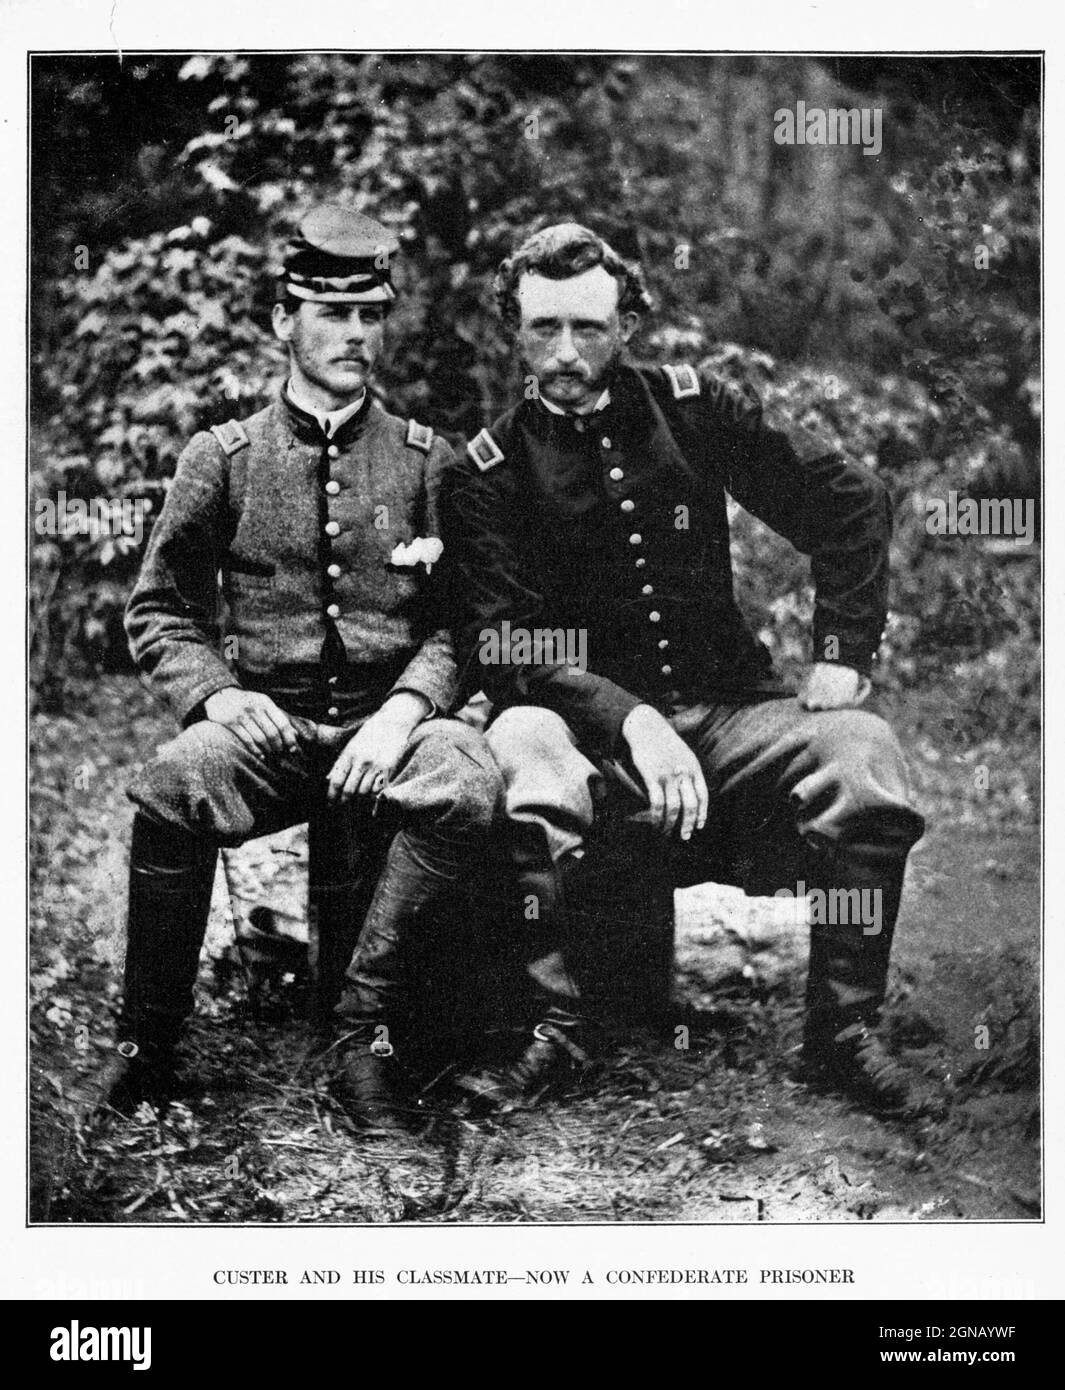 Auf der linken Seite sitzt Leutnant J. B. Washington, C. S. A., der ein Adjutant von General Johnston bei Fair Oaks war. Neben ihm sitzt Leutnant George A. Custer, der Fünften U. S. Kavallerie, Adjutant des Stabs von McClellan, später berühmter Kavalleriegeneral und indischer Kämpfer. Beide Männer waren Absolventen von West Point und hatten gemeinsam an der Mili tary Academy teilgenommen. Am Morgen des 31. Mai 1862 wurde Leutnant Washington in Fair Oaks von einigen der Streikposten von General Casey gefangen genommen. Später am Tag lief sein ehemaliger Klassenkamerad über ihn und ein dramatisches Treffen wurde so von der Kamera aufgezeichnet. Aus dem Buch "The Civil war Throu Stockfoto